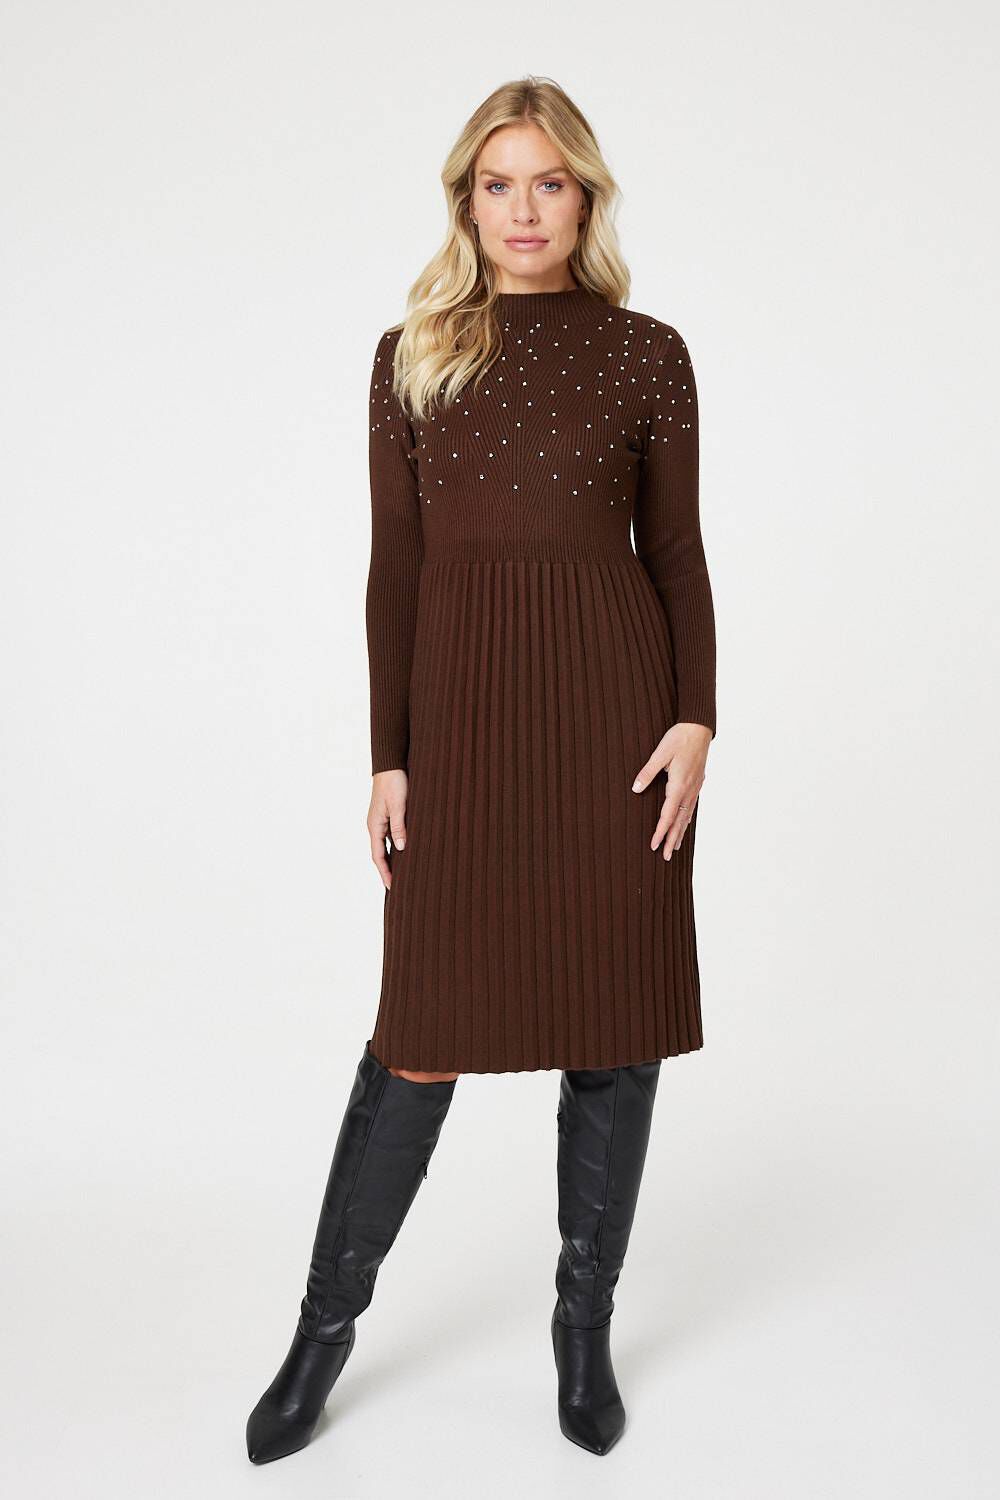 Izabel London Women’s Brown Viscose Embellished High Neck Knitted Dress, Size: L